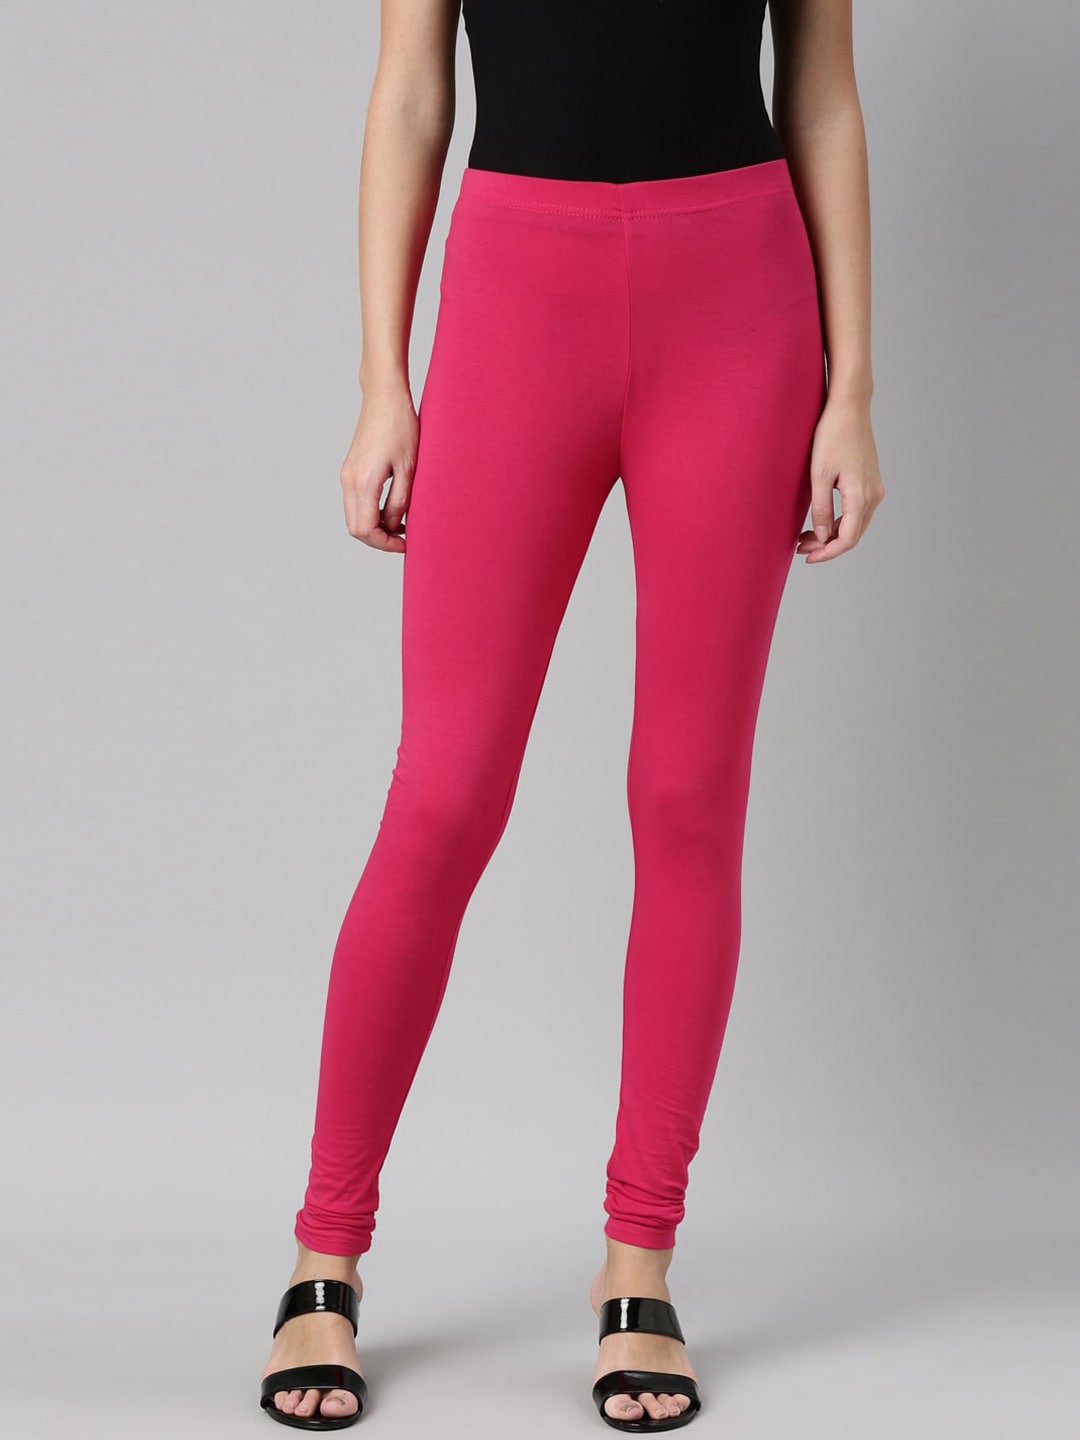 Neon Pink Leggings women's sport leggings gym wear women - AliExpress